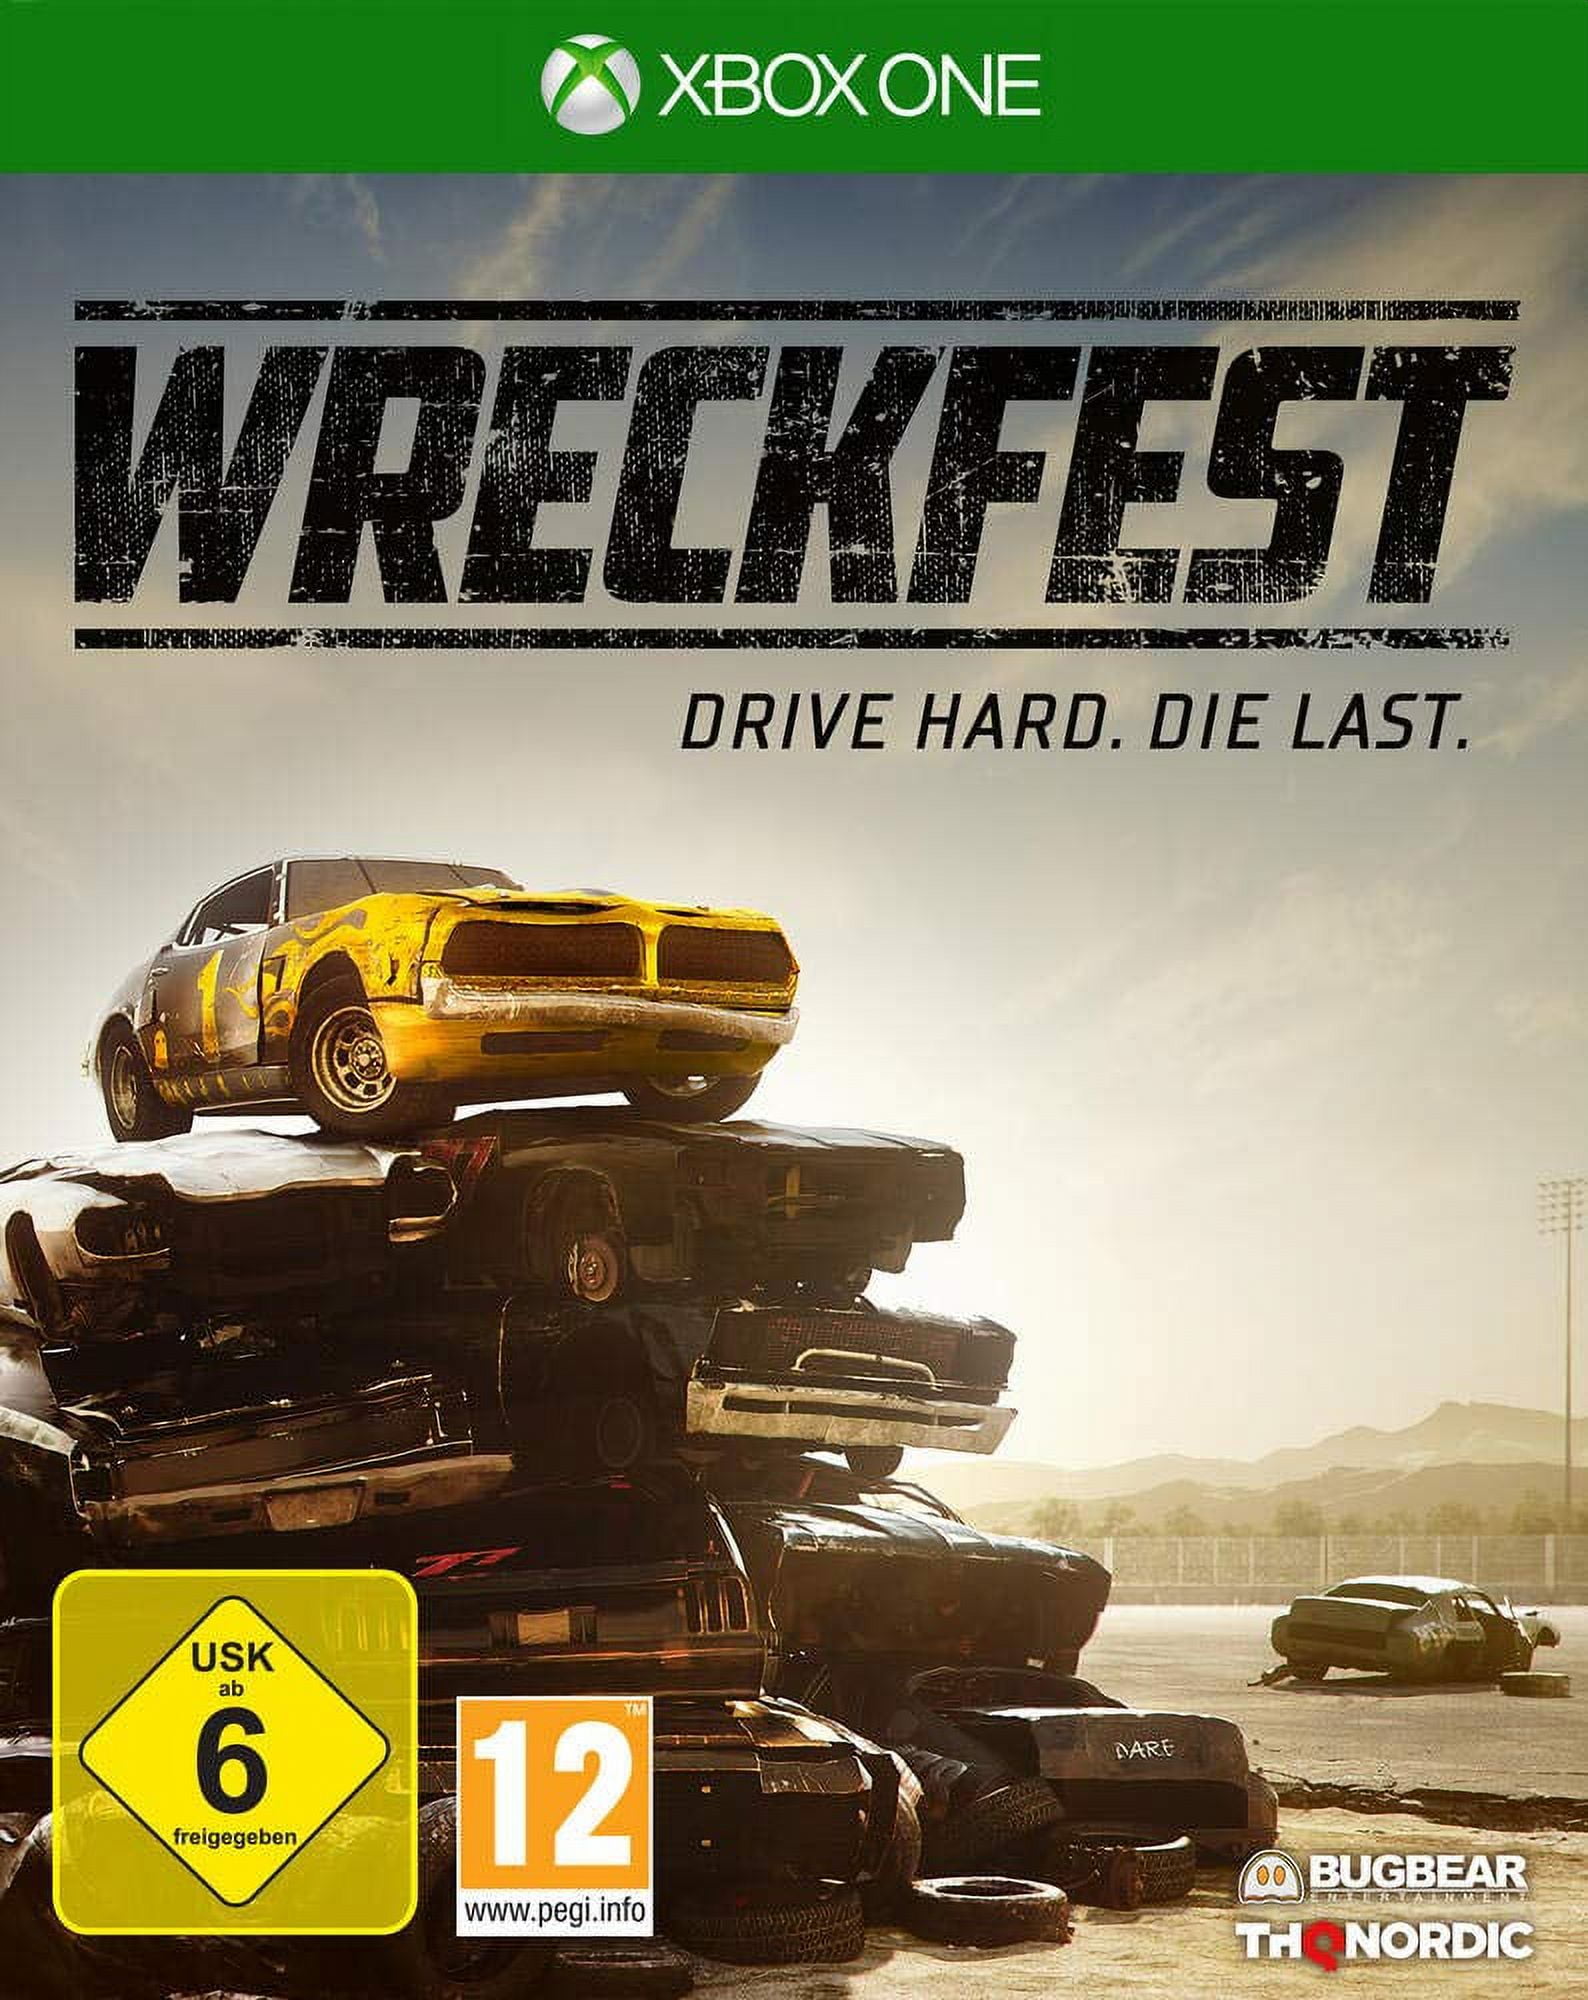 Wreckfest e Virtua Fighter 5 são destaques nos lançamentos da semana